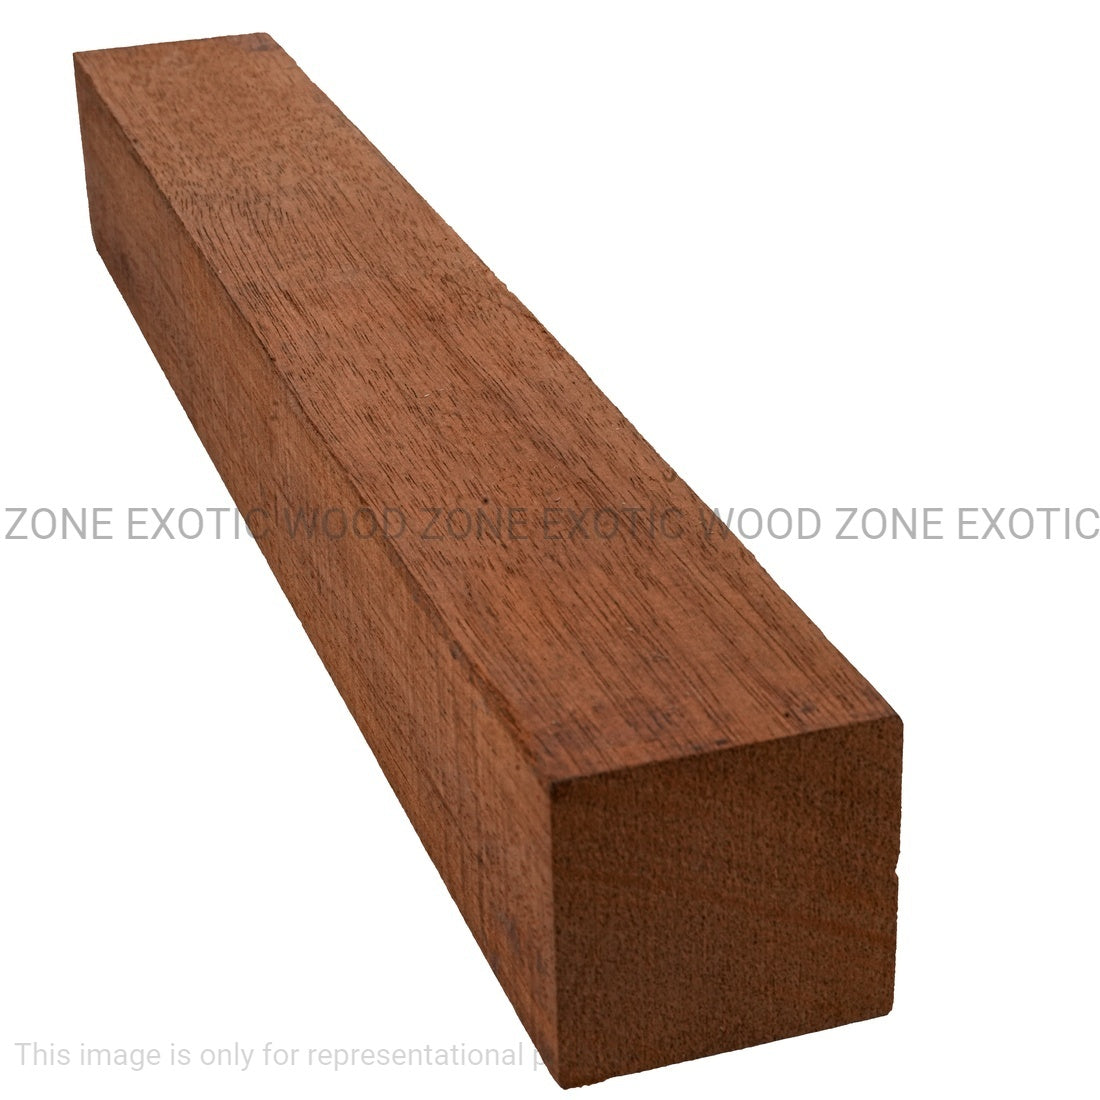 Combo Pack 10, Genuine Honduran Mahogany Turning Blanks 12” x 1” x 1” - Exotic Wood Zone - Buy online Across USA 